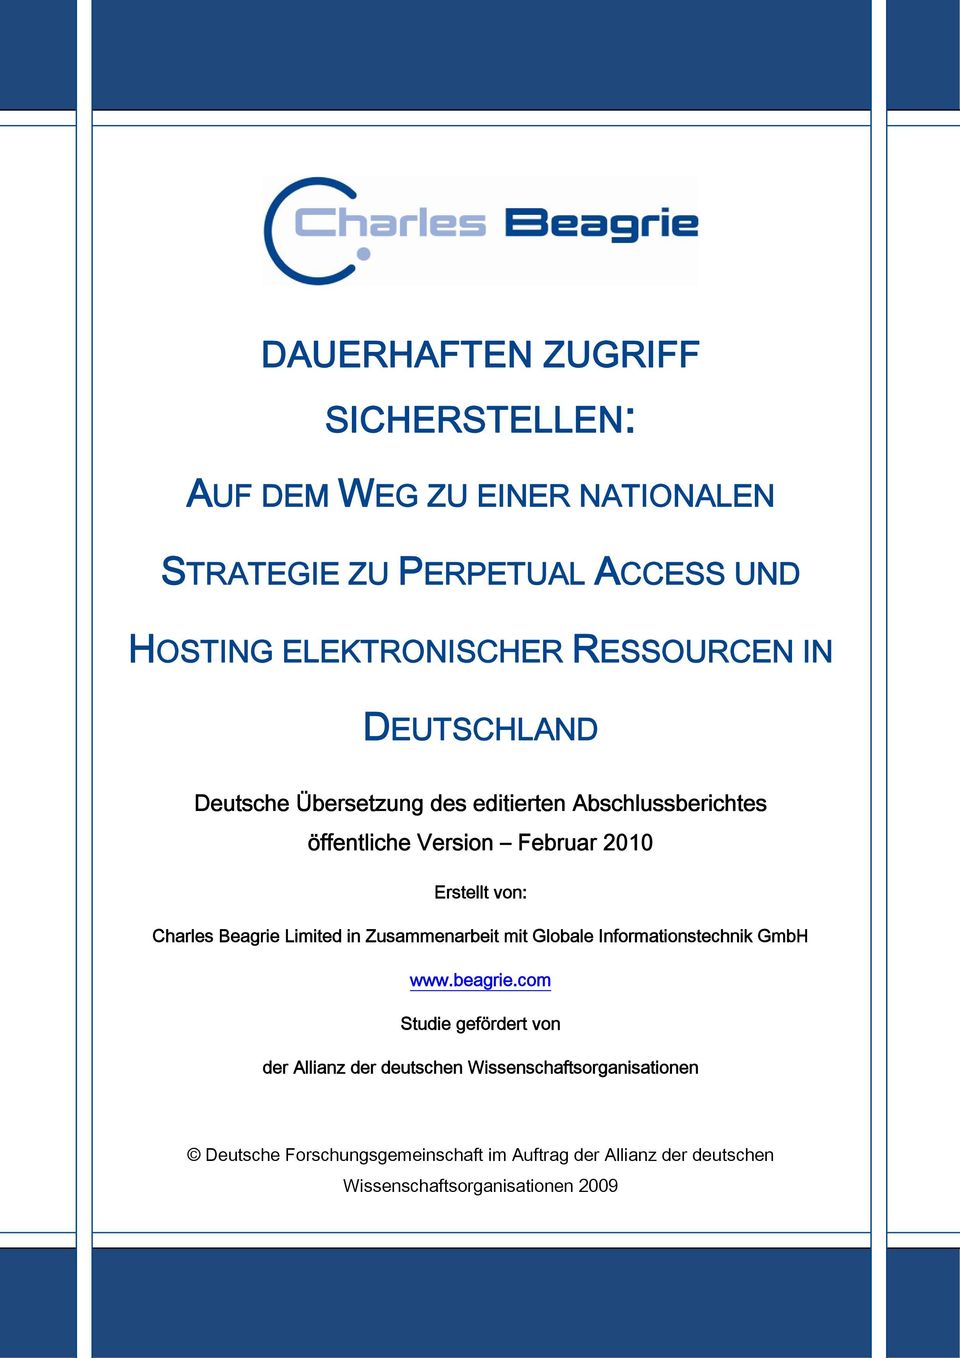 Charles Beagrie Limited in Zusammenarbeit mit Globale Informationstechnik GmbH www.beagrie.